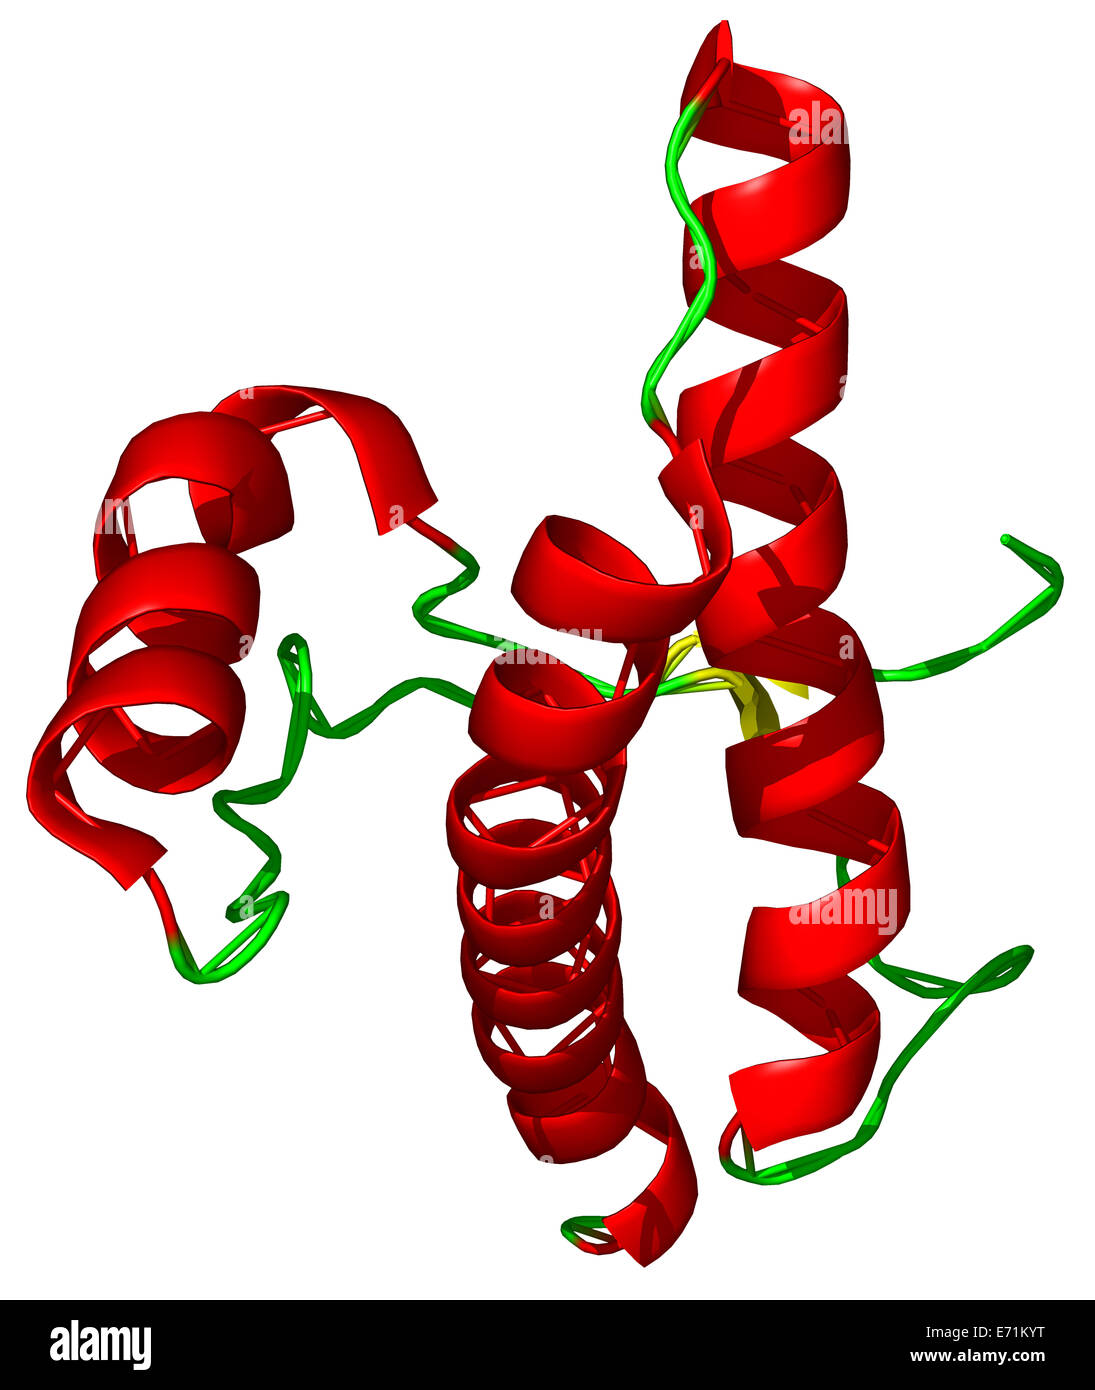 La proteína prion (PrP) es una glicoproteína de la superficie celular. Las enfermedades priónicas ocuring naturalmente incluyen la enfermedad de Creutzfeldt-Jakob Foto de stock